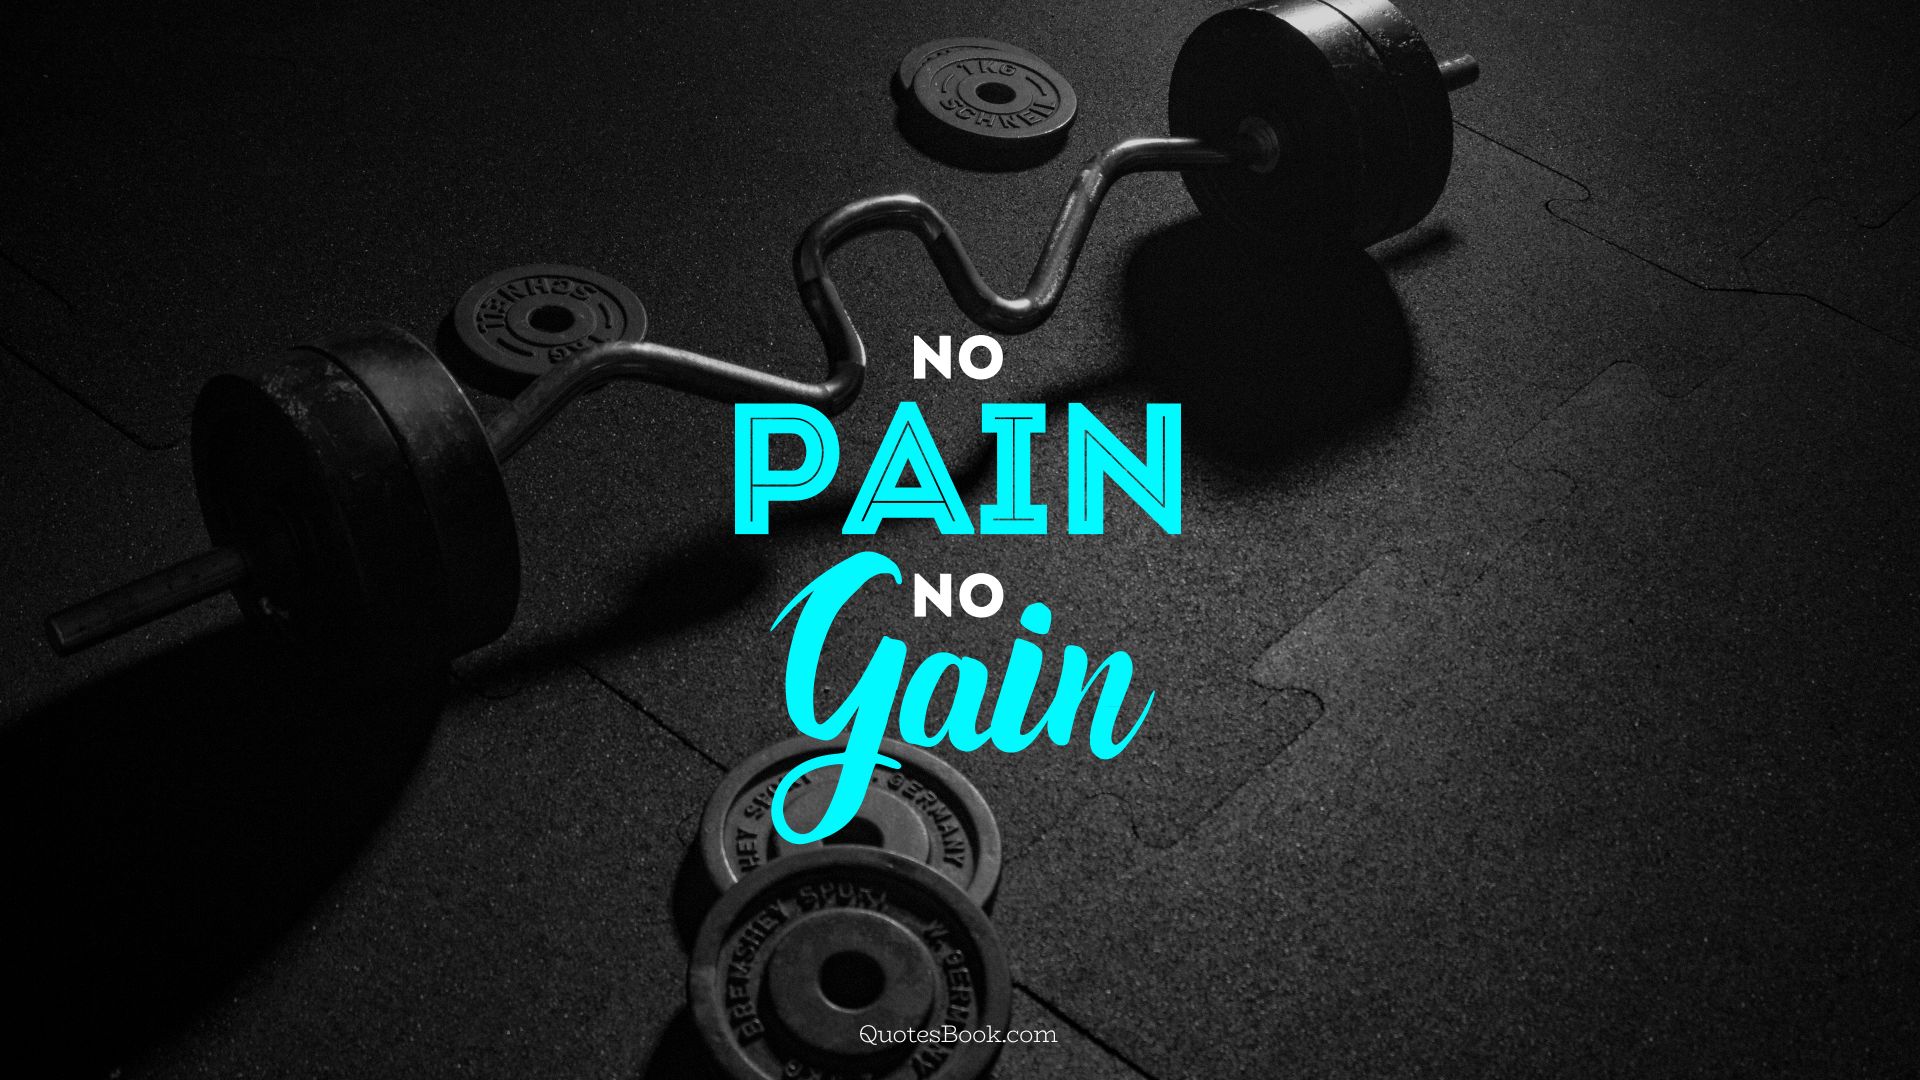 No pain, no gain